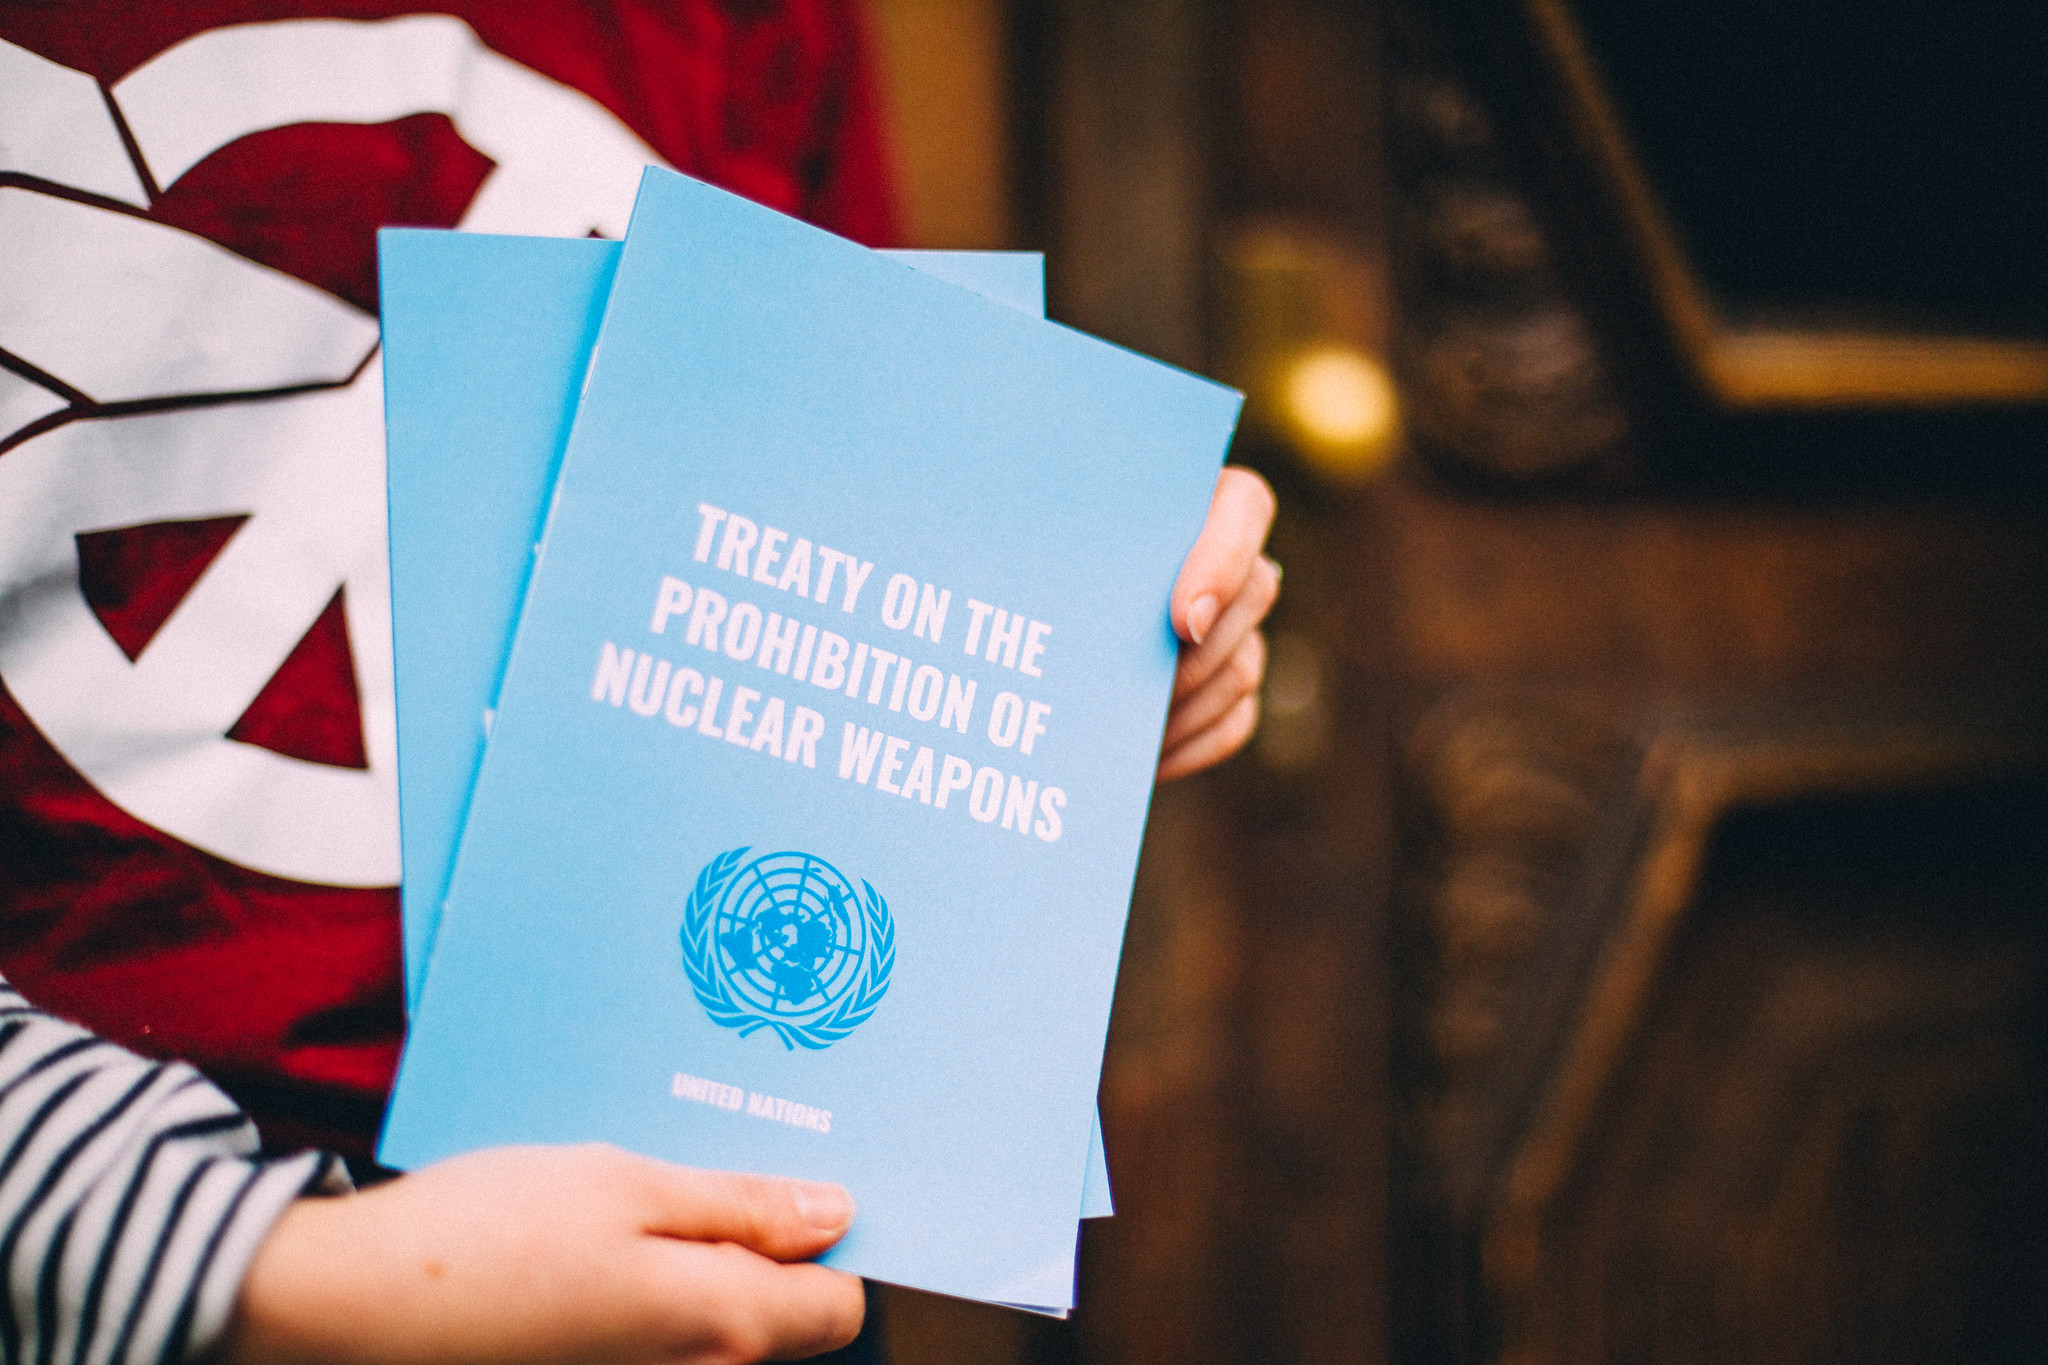 Da due anni il TPNW è la norma internazionale contro le armi nucleari: ora serve impegno concreto